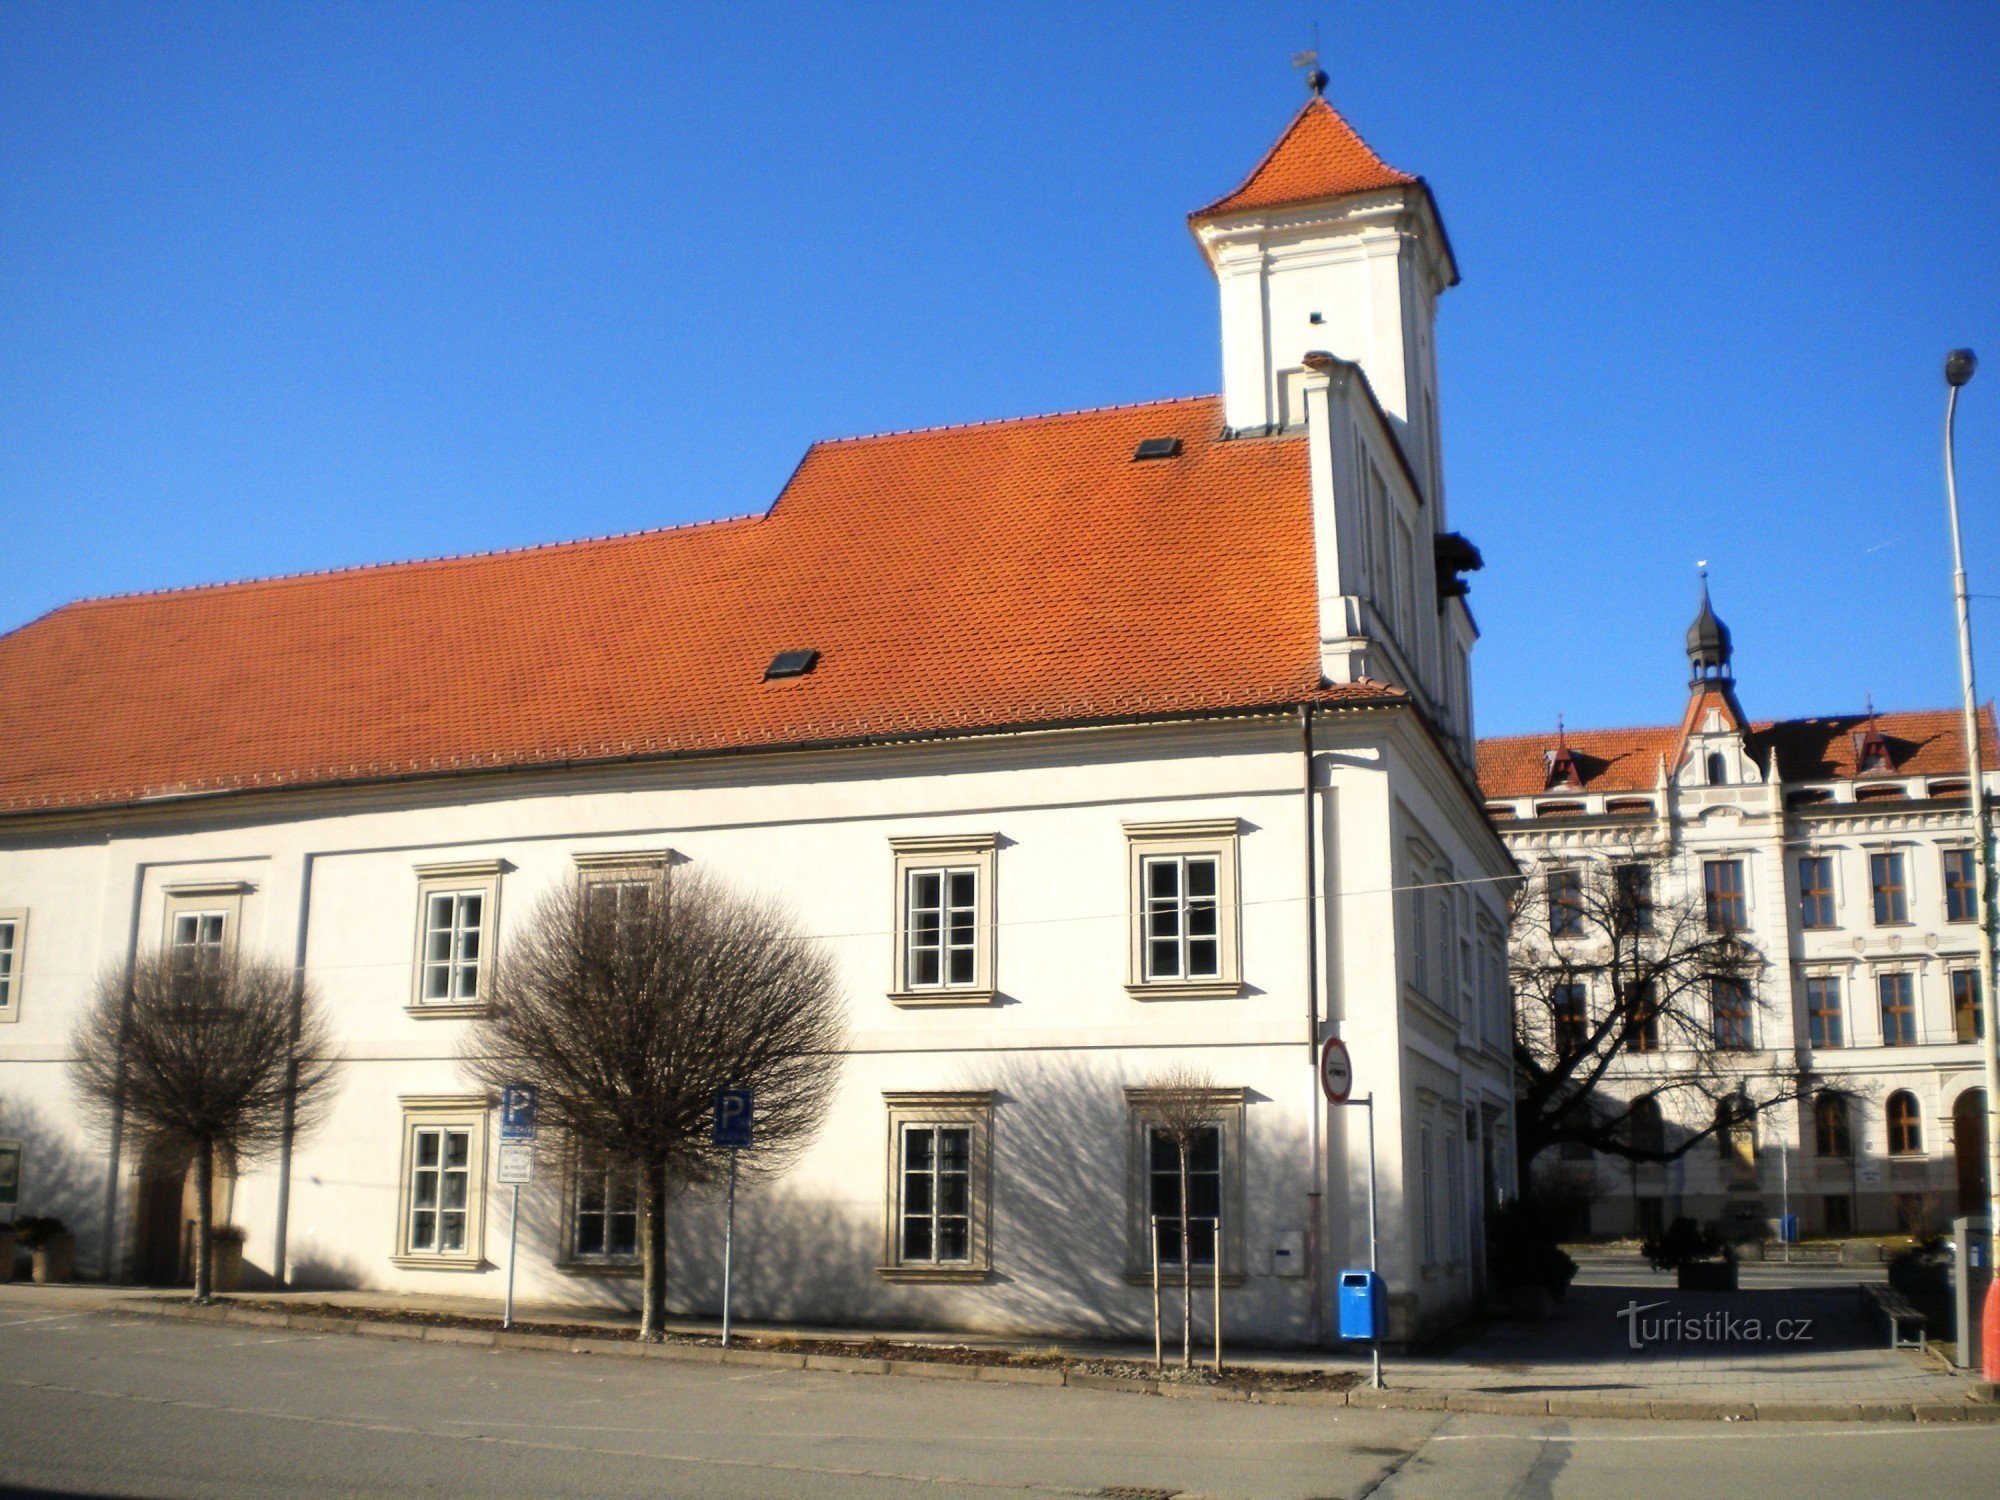 ルシノフの旧市庁舎、現在はチェスカー スポリテルナの本部